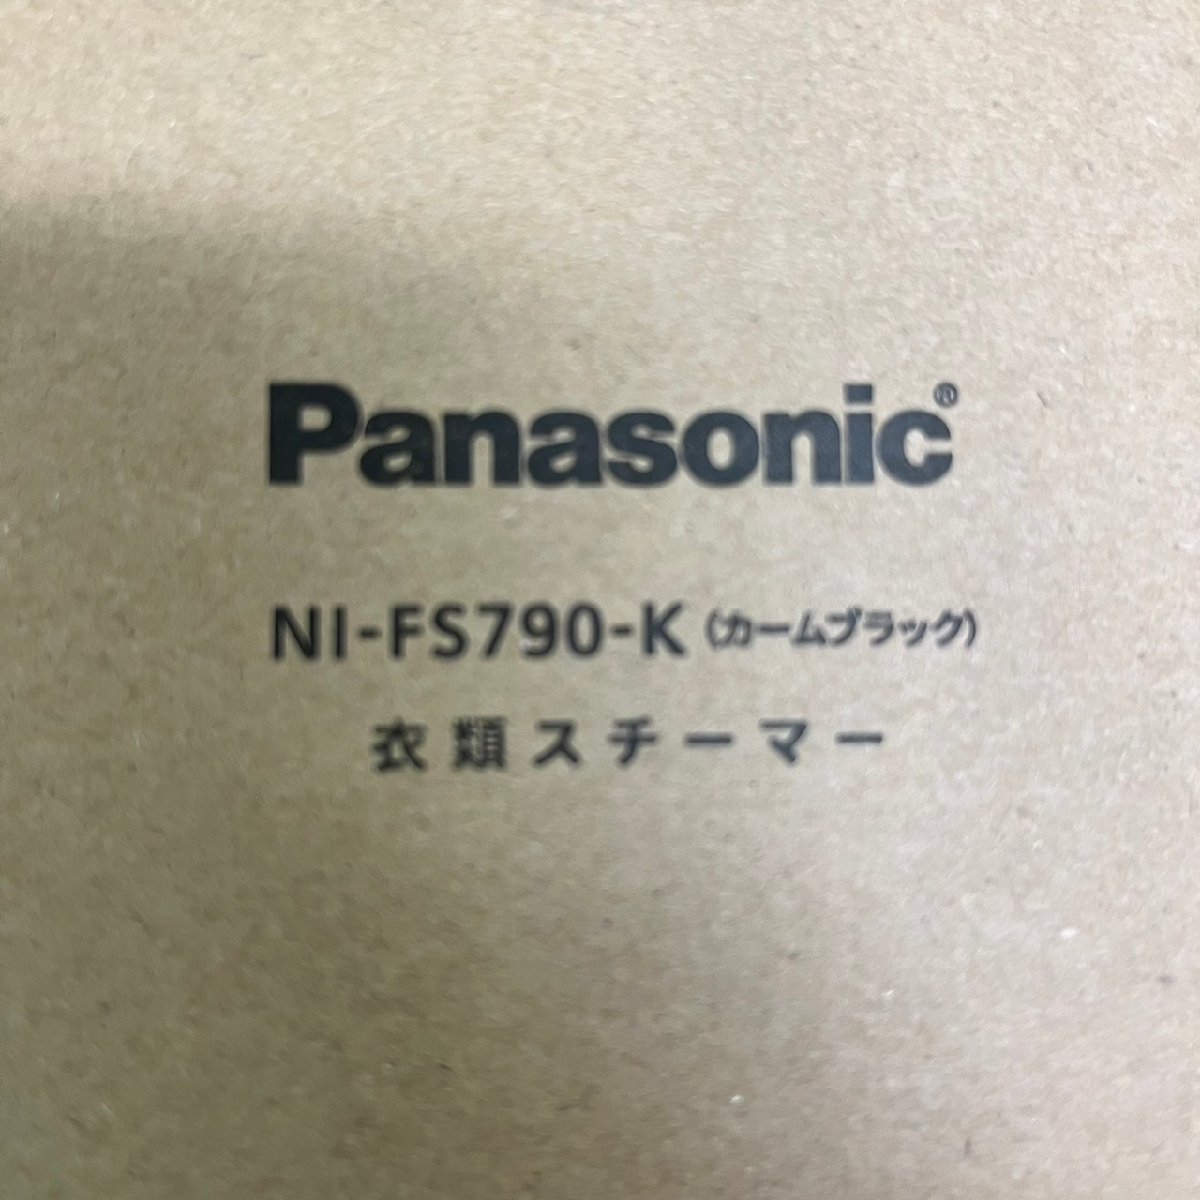 贅沢 【新品 未使用品】『10-009』Panasonic NI-FS790-K カーム